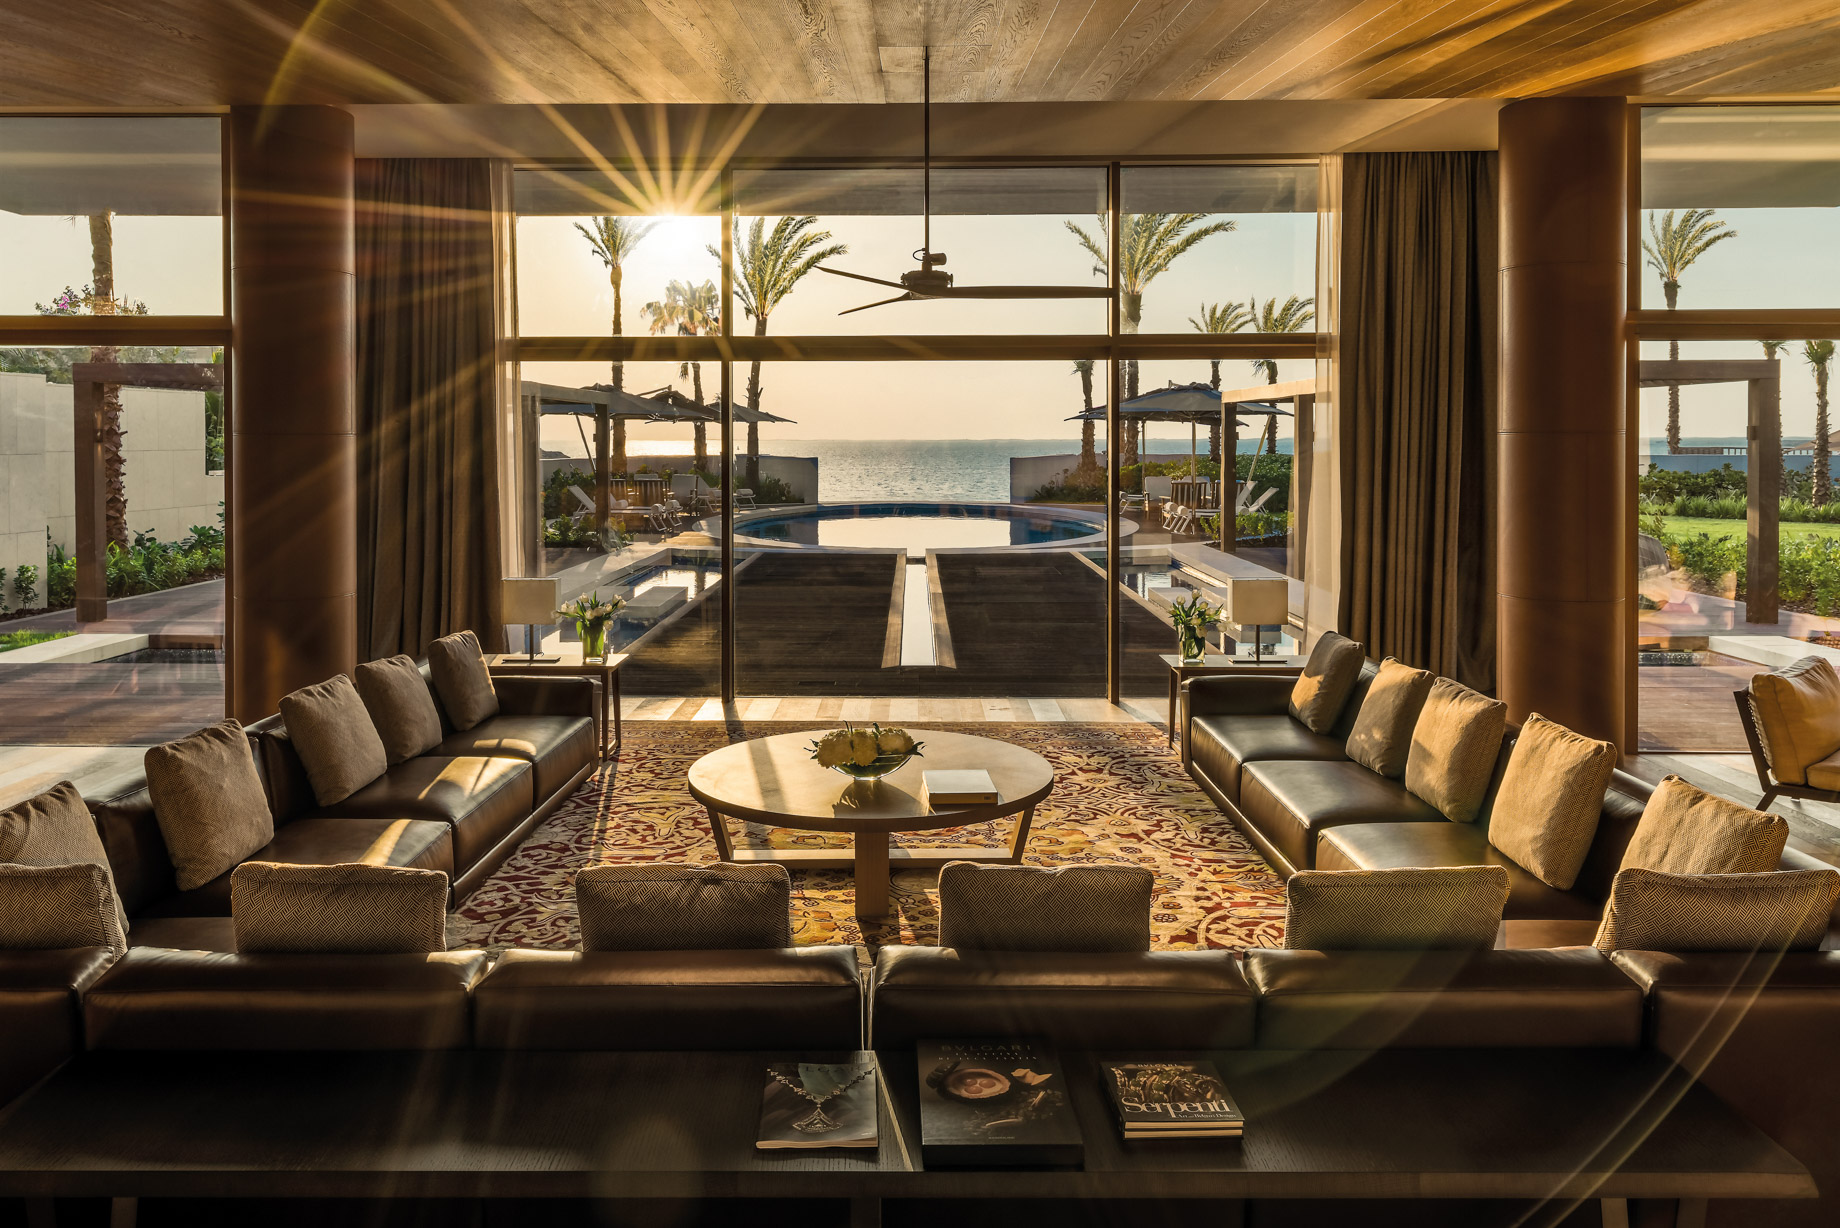 Bvlgari Resort Dubai – Jumeira Bay Island, Dubai, UAE – Bvlgari Villa Living Room Ocean Pool View Sunset